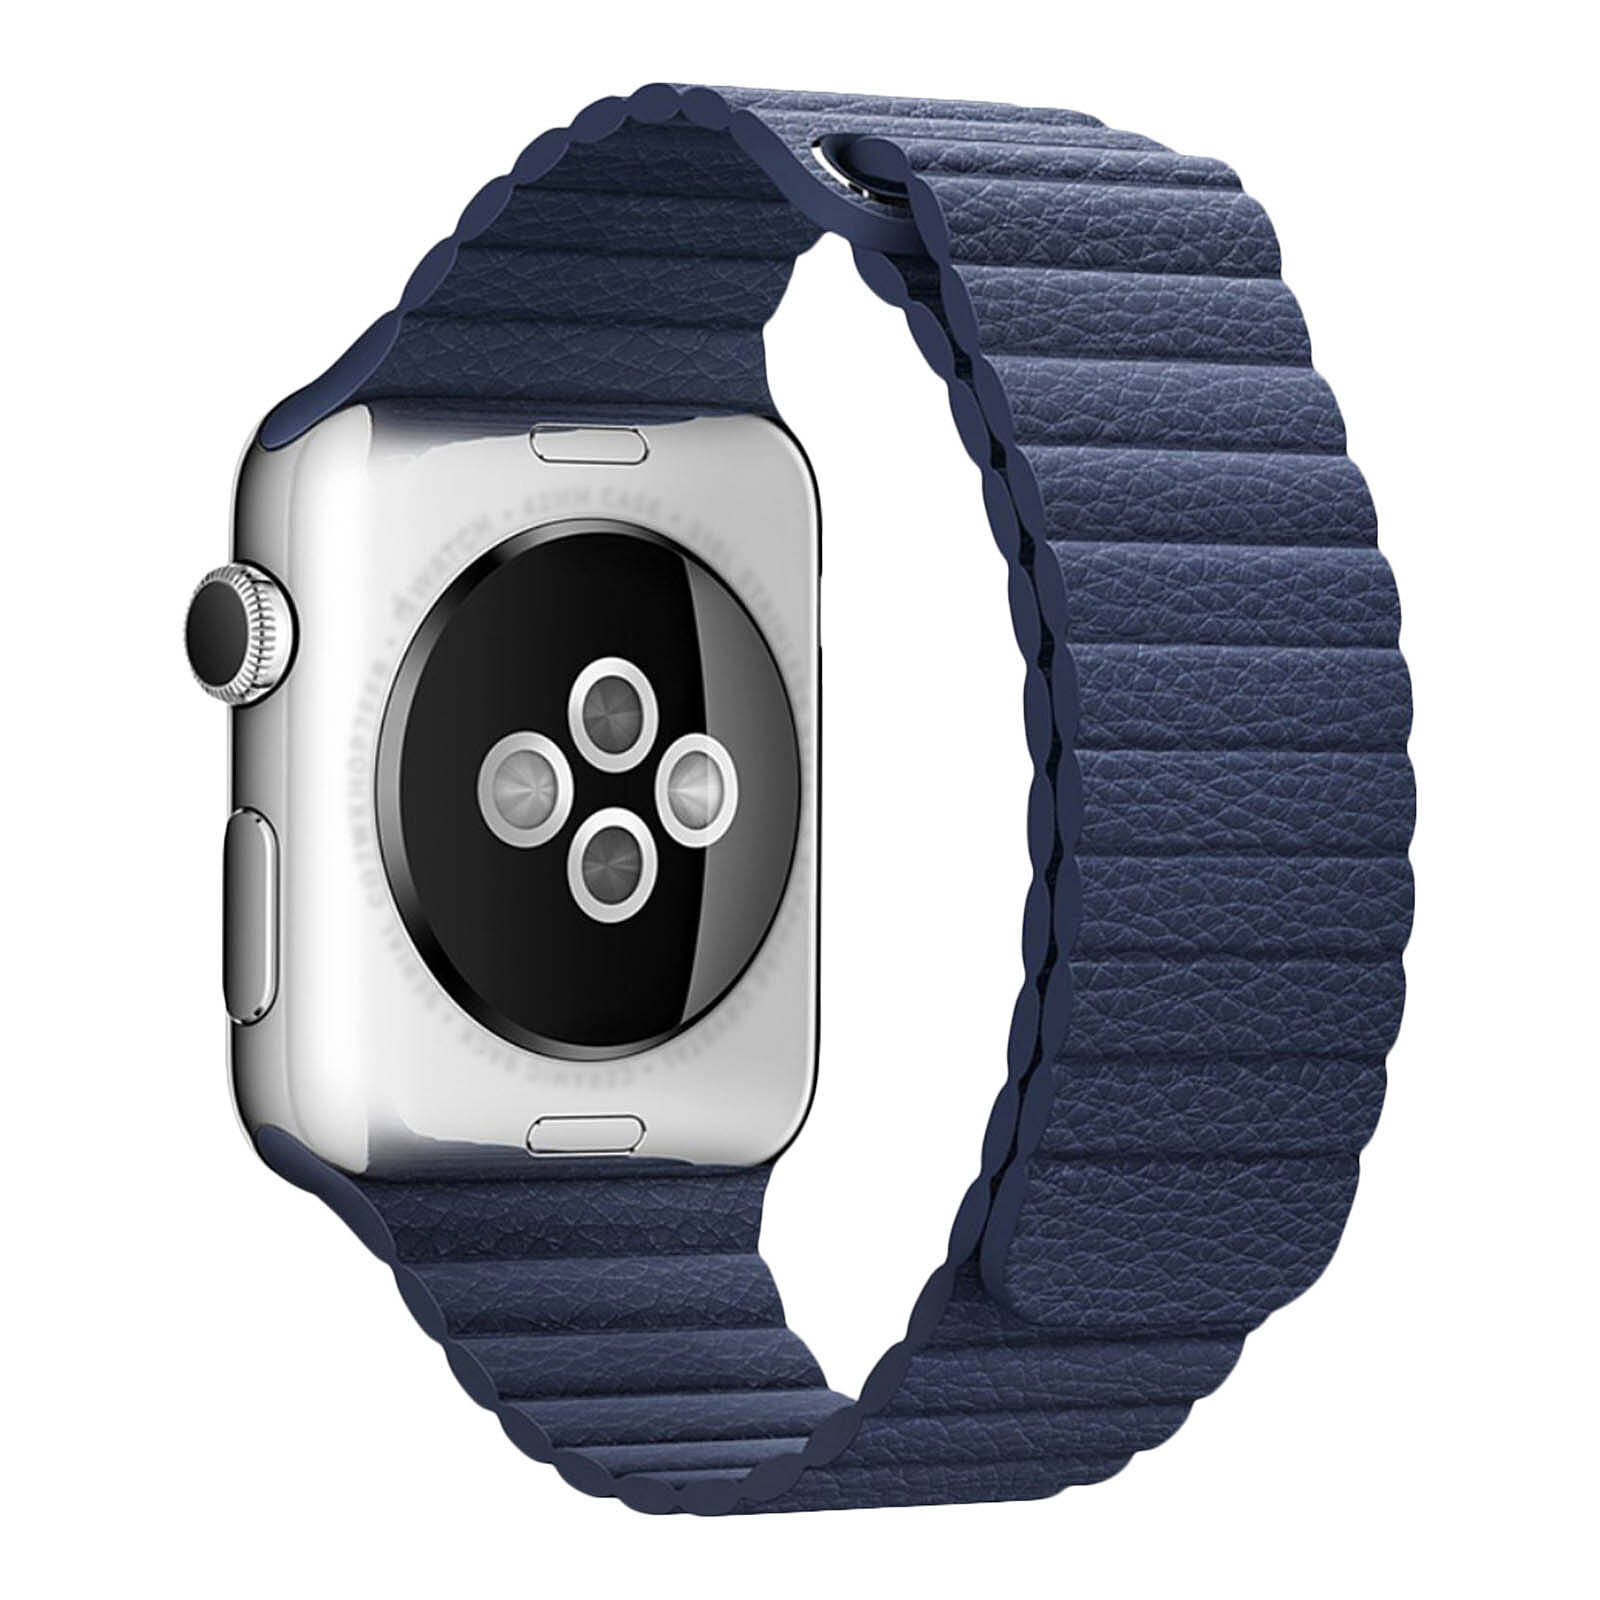 Ремешки для apple watch ultra 2. Кожаный ремешок для Эппл вотч 44 мм. Кожаный ремешок для Apple watch 42mm. Ремешки для Эппл вотч 7. Ремешки для Apple IWATCH 3 42mm.